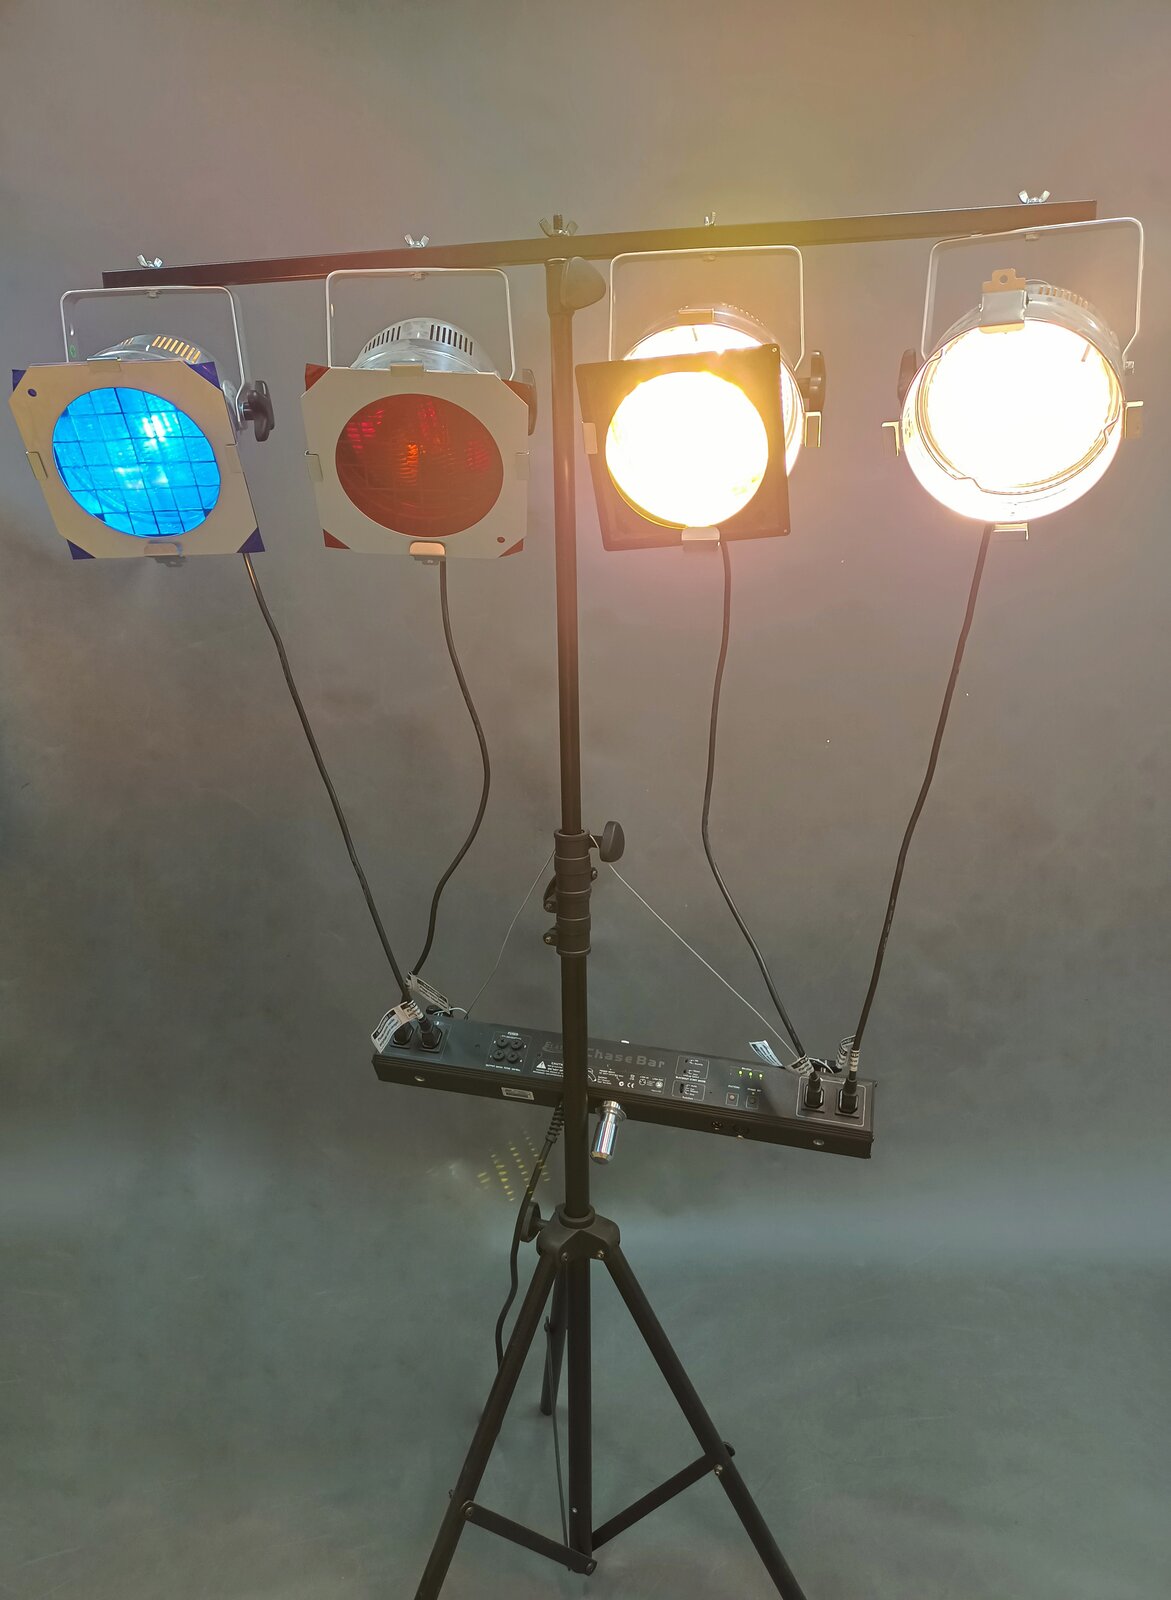 Zdjęcie przedstawia zestaw lamp z filtrami mocowany na statywie, w którego skład wchodzą dwie lampy świecące światłem naturalnym, jedna lampa świecąca światłem czerwonym dzięki nałożonemu filtrowi i jedna lampa świecąca światłem niebieskim dzięki nałożonemu filtrowi. 